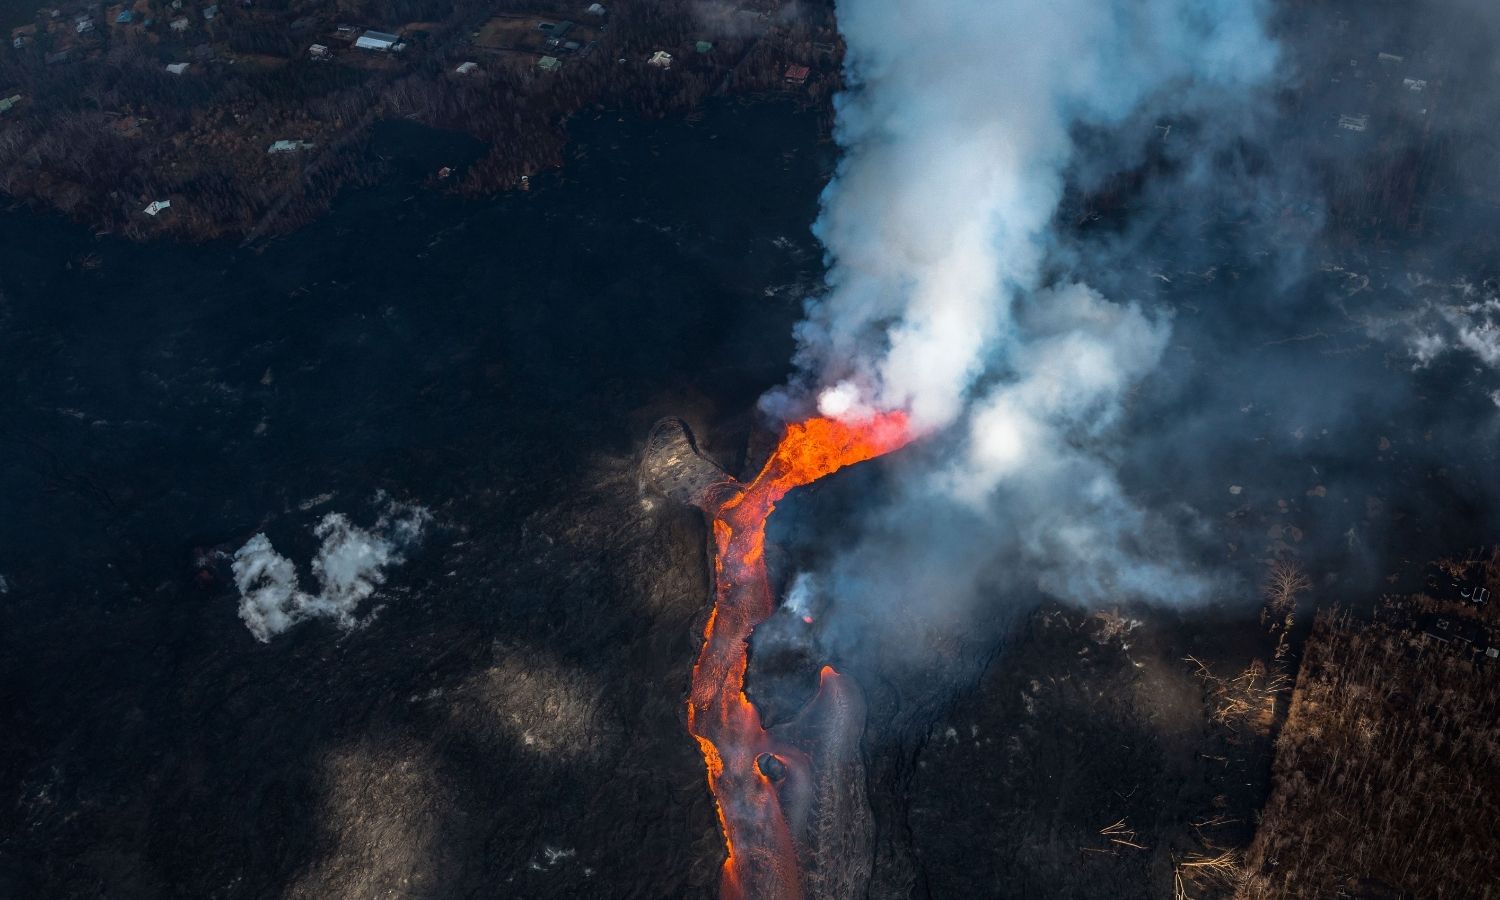 OTD in 2018: The Kilauea volcano on Big Island in Hawaii began to erupt.